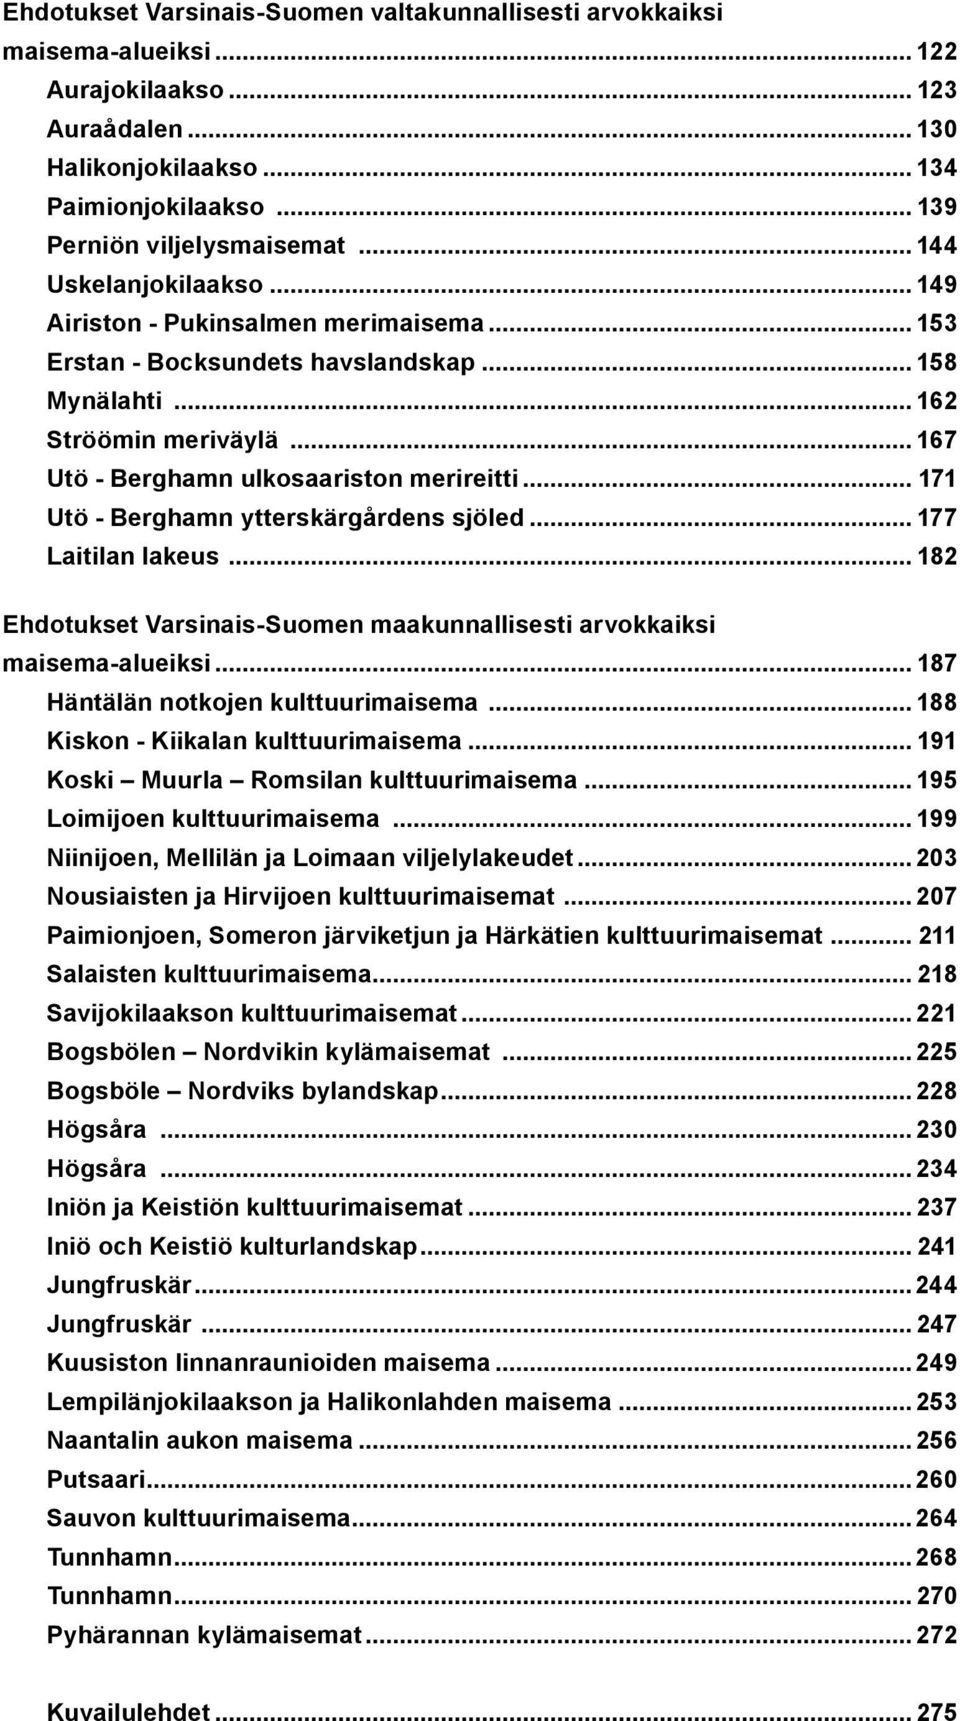 .. 171 Utö - Berghamn ytterskärgårdens sjöled... 177 Laitilan lakeus... 182 Ehdotukset Varsinais-Suomen maakunnallisesti arvokkaiksi maisema-alueiksi... 187 Häntälän notkojen kulttuurimaisema.